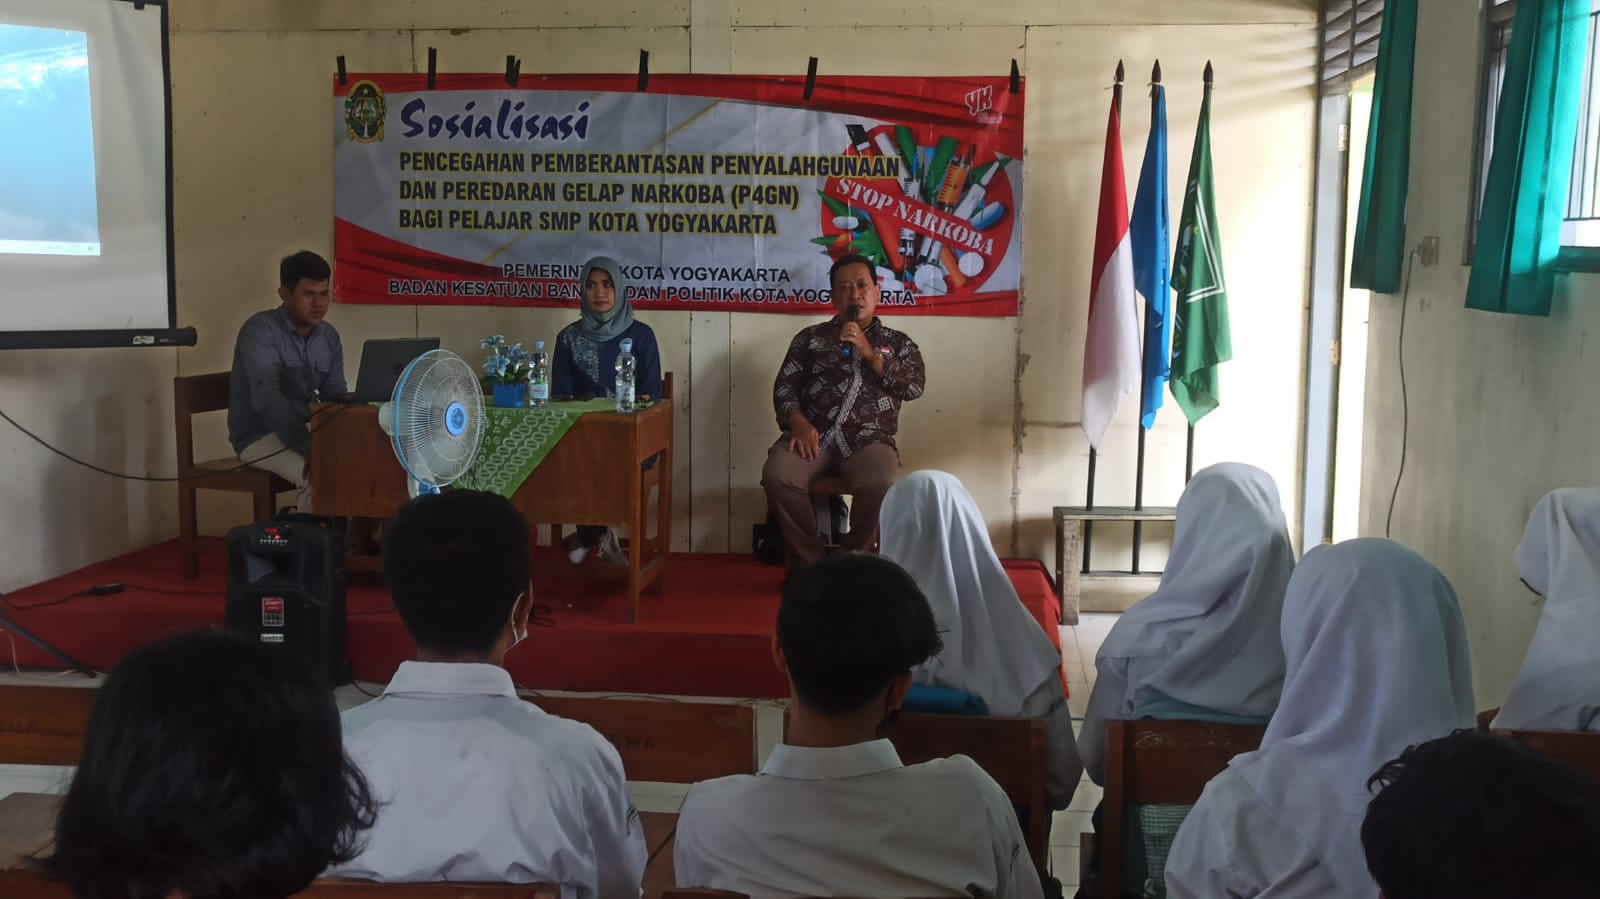 Kegiatan Sosialisasi P4GN Bagi Pelajar SMP Se Kota Yogyakarta ke II